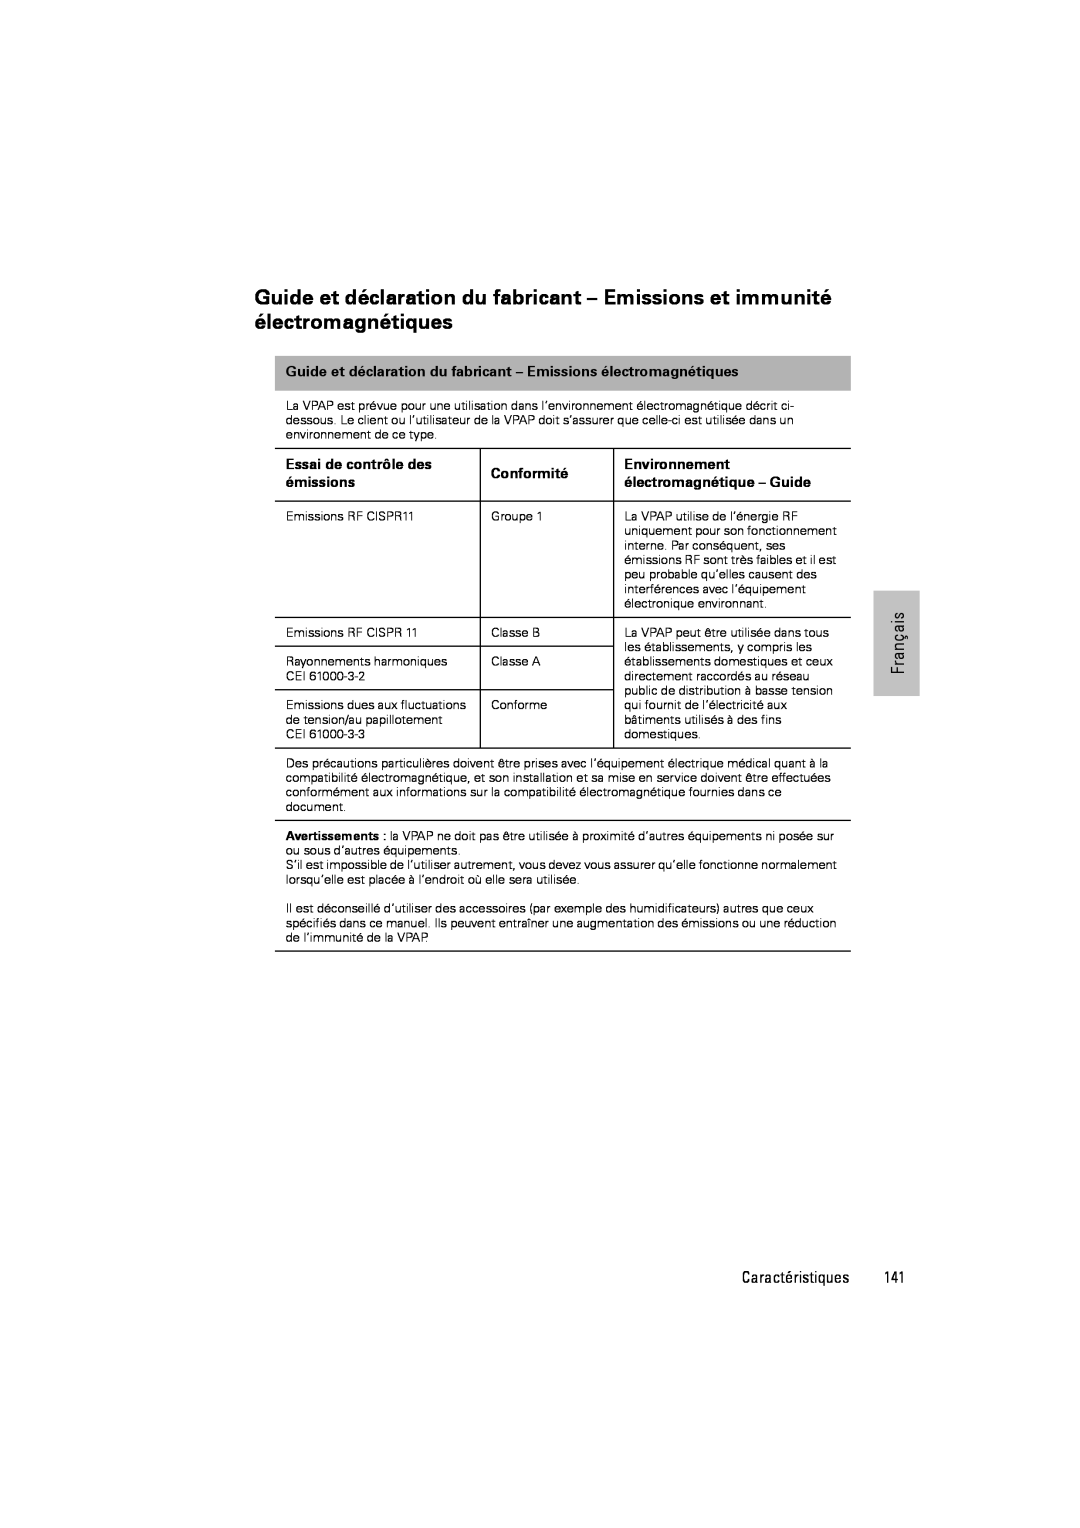 ResMed III & III ST user manual Essai de contrôle des, Conformité, Environnement, émissions, électromagnétique - Guide 